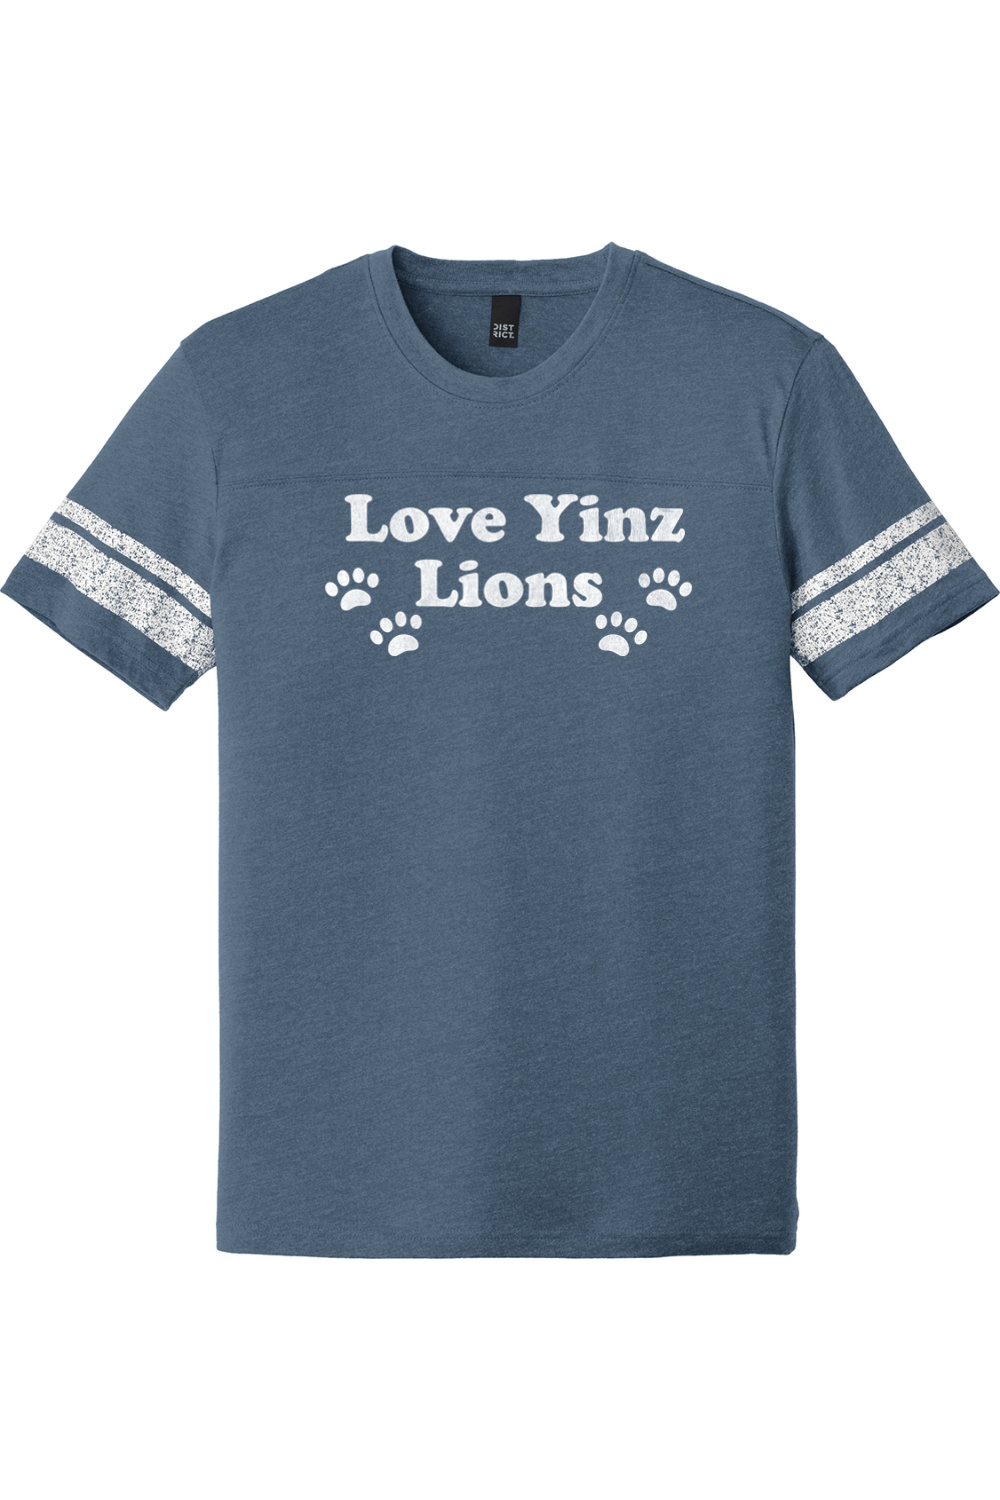 Love Yinz Lions - Game Tee - Yinzylvania